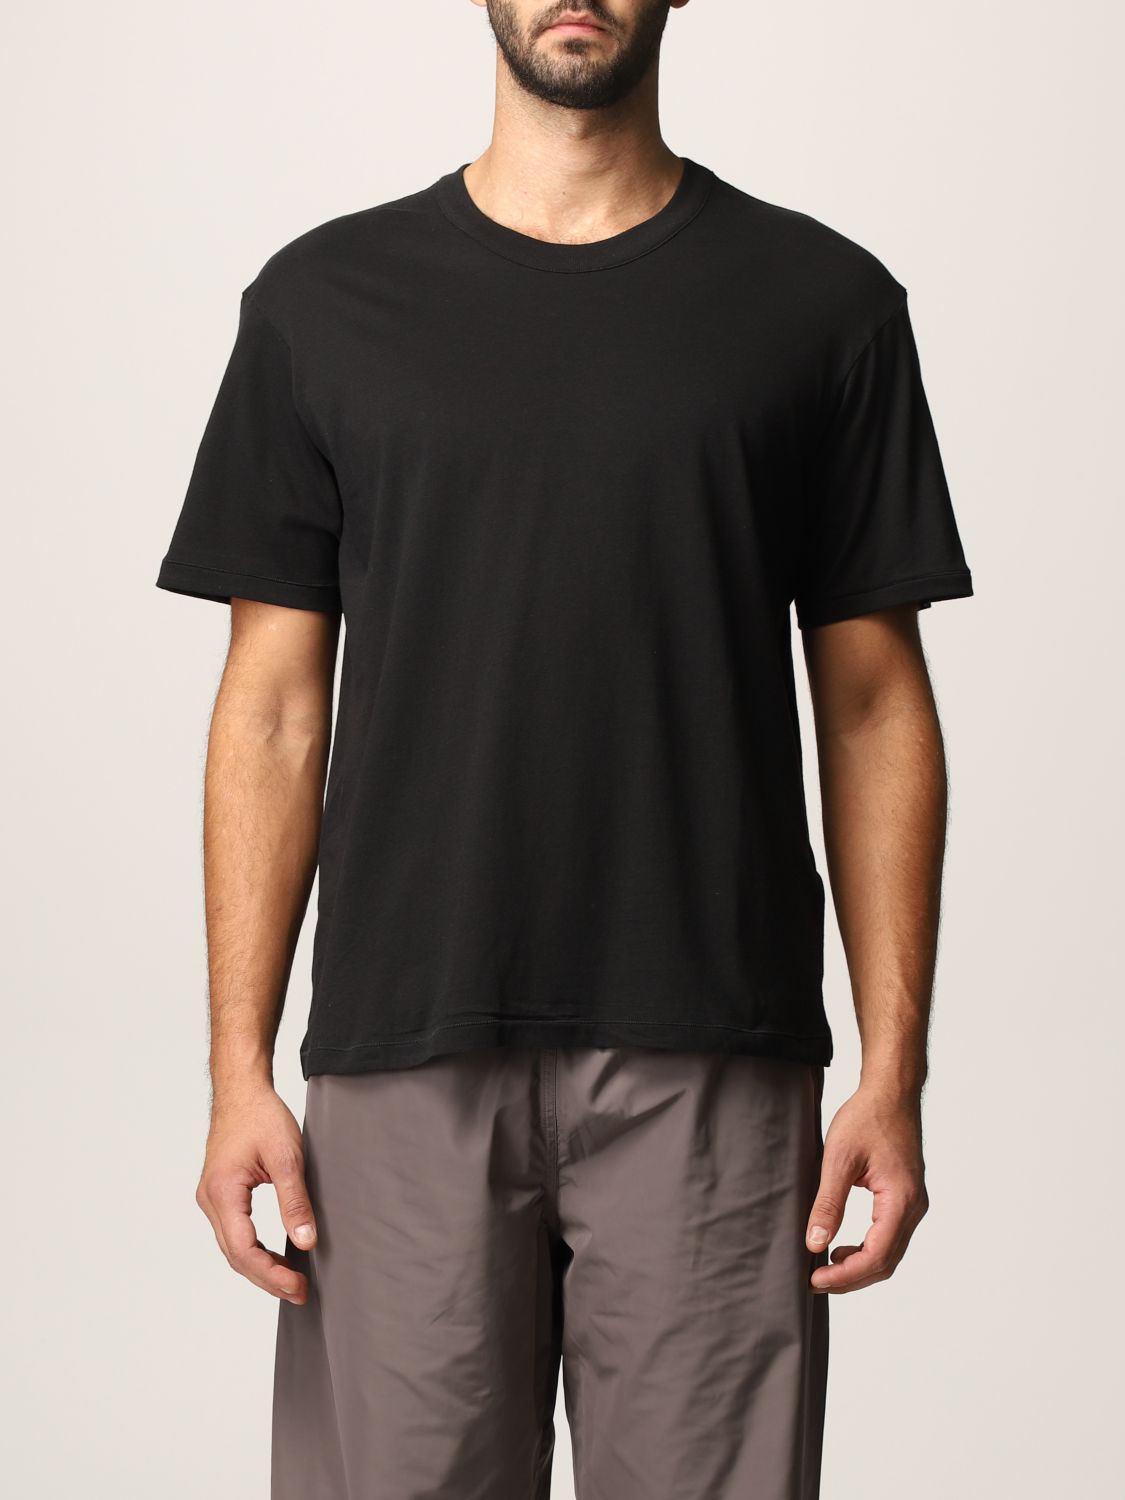 T-Shirt Heron Preston For Calvin Klein: T-shirt herren Orange 2.0-heron Preston X Calvin Klein schwarz 2